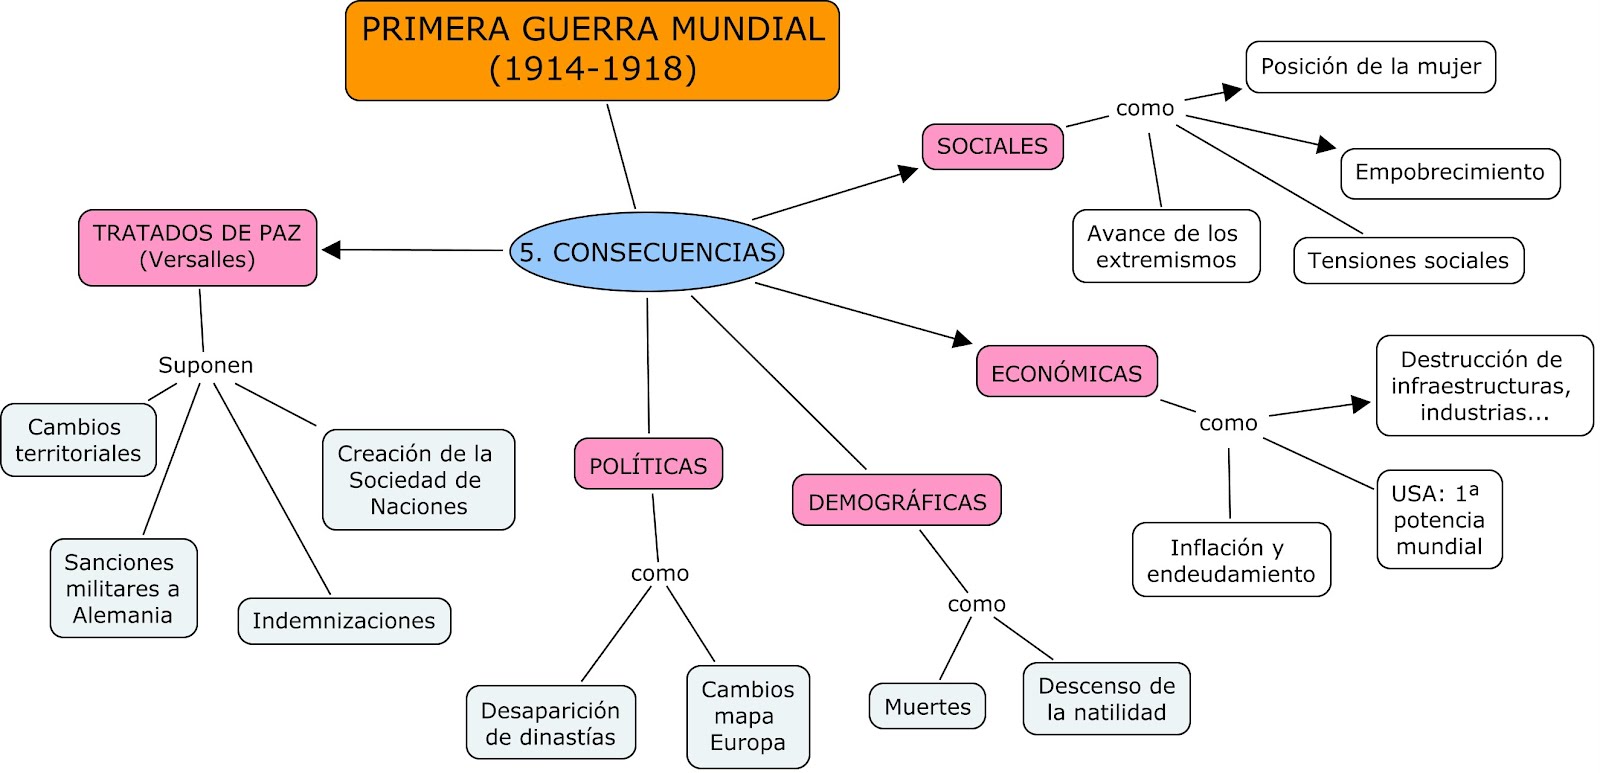 Blog del profe Jaime: PRIMERA GUERRA MUNDIAL: MAPAS CONCEPTUALES